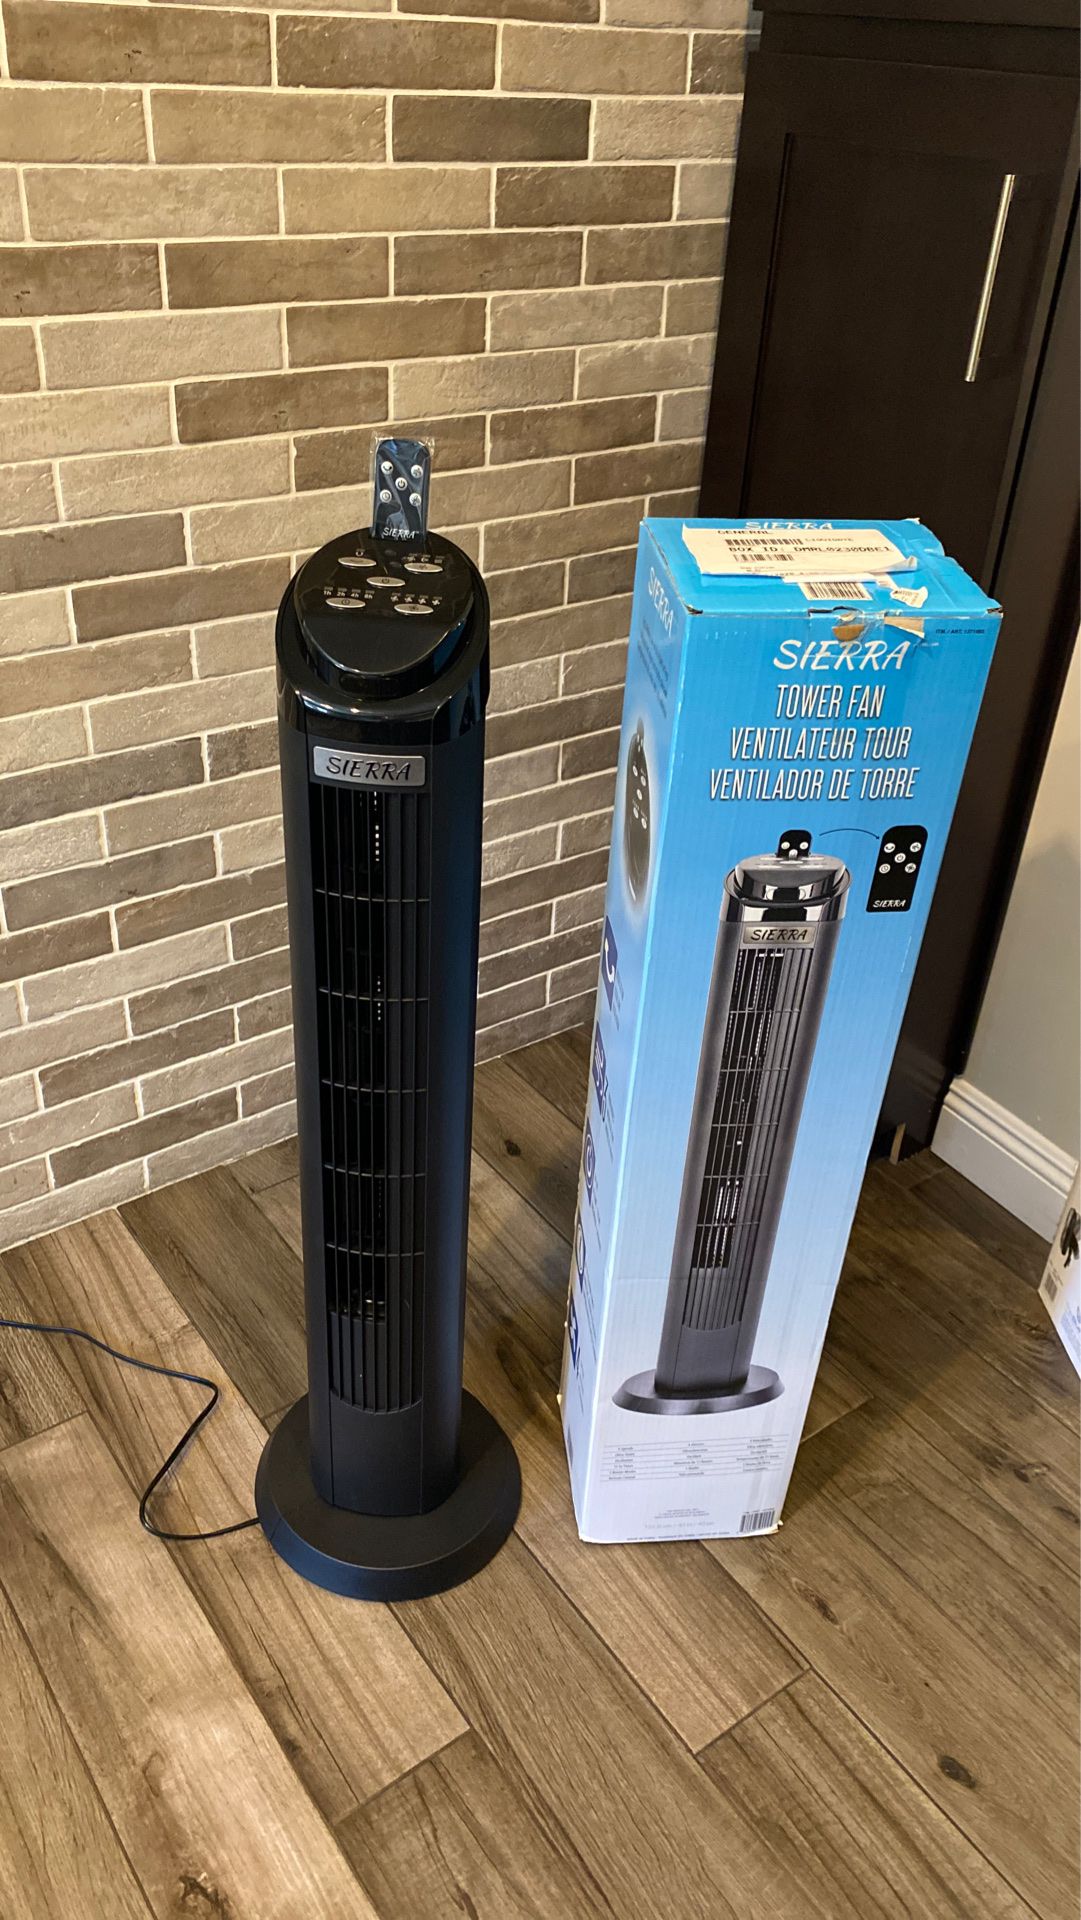 Sierra tower fan , ventilador de torre